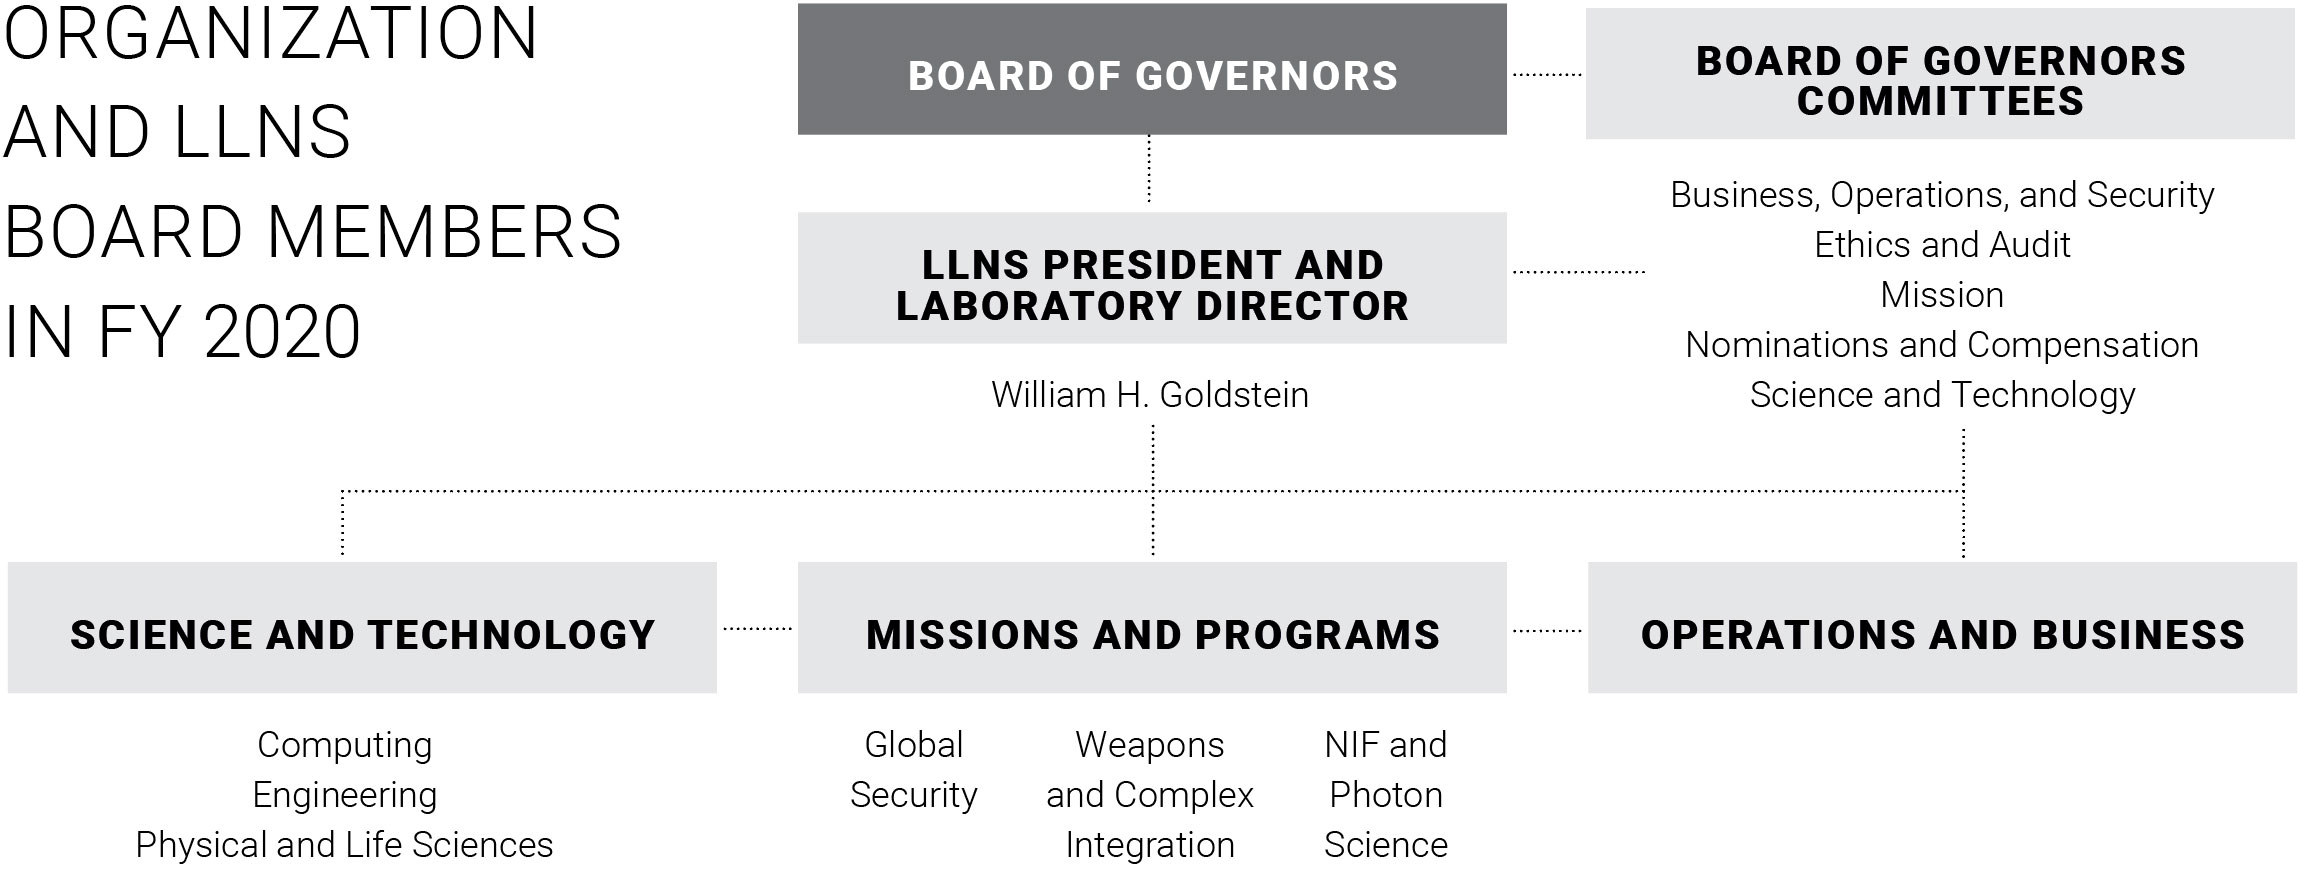 organization chart of LLNS Board members in FY 2020